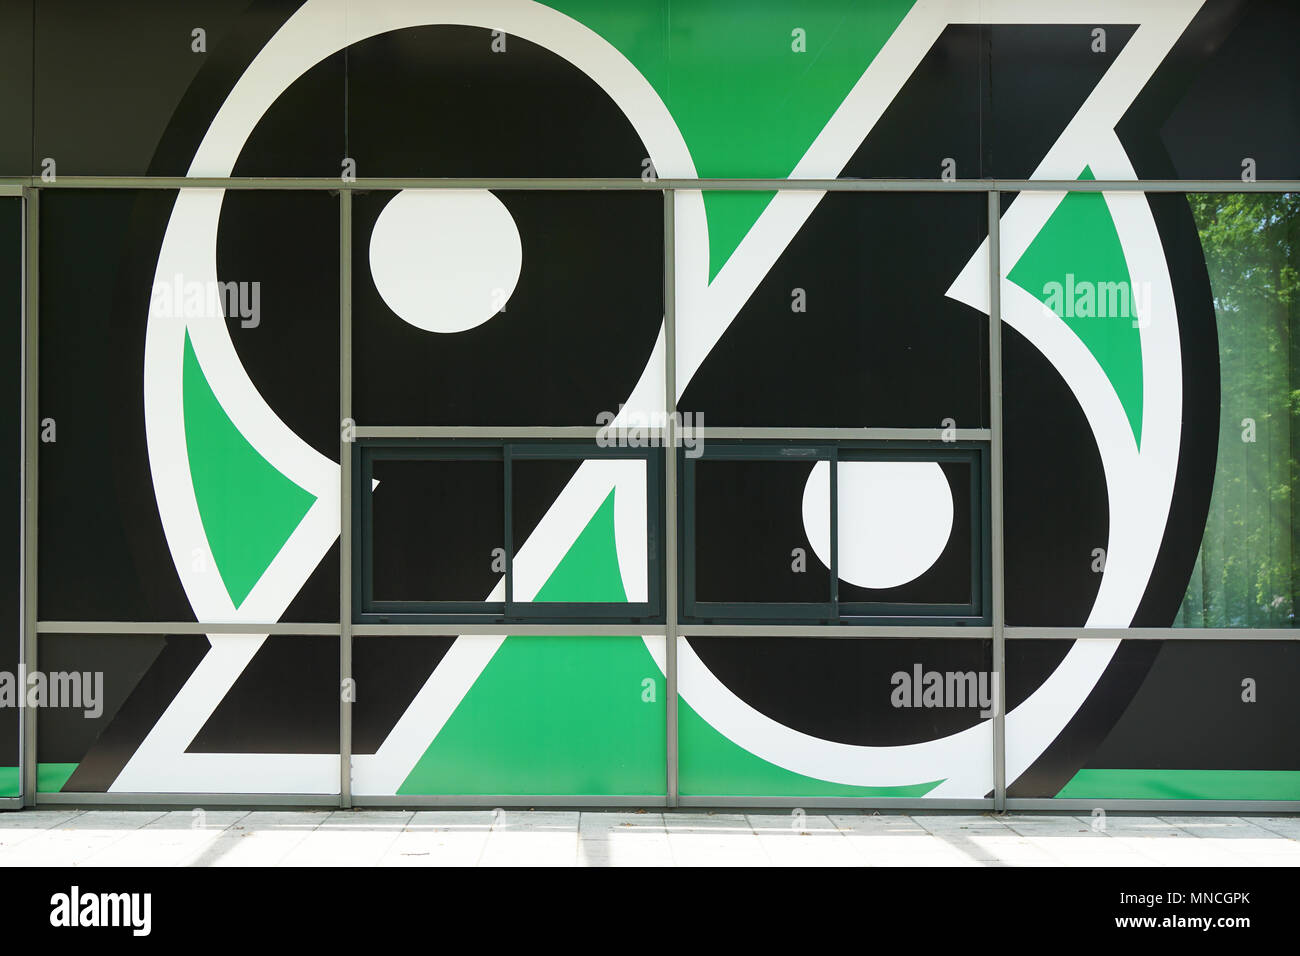 Hannover, Deutschland - 13. Mai 2018: Logo der deutschen Fußball-Bundesliga oder Fußball Club Hannover 96 am fan shop Fenster im Stadion. Stockfoto